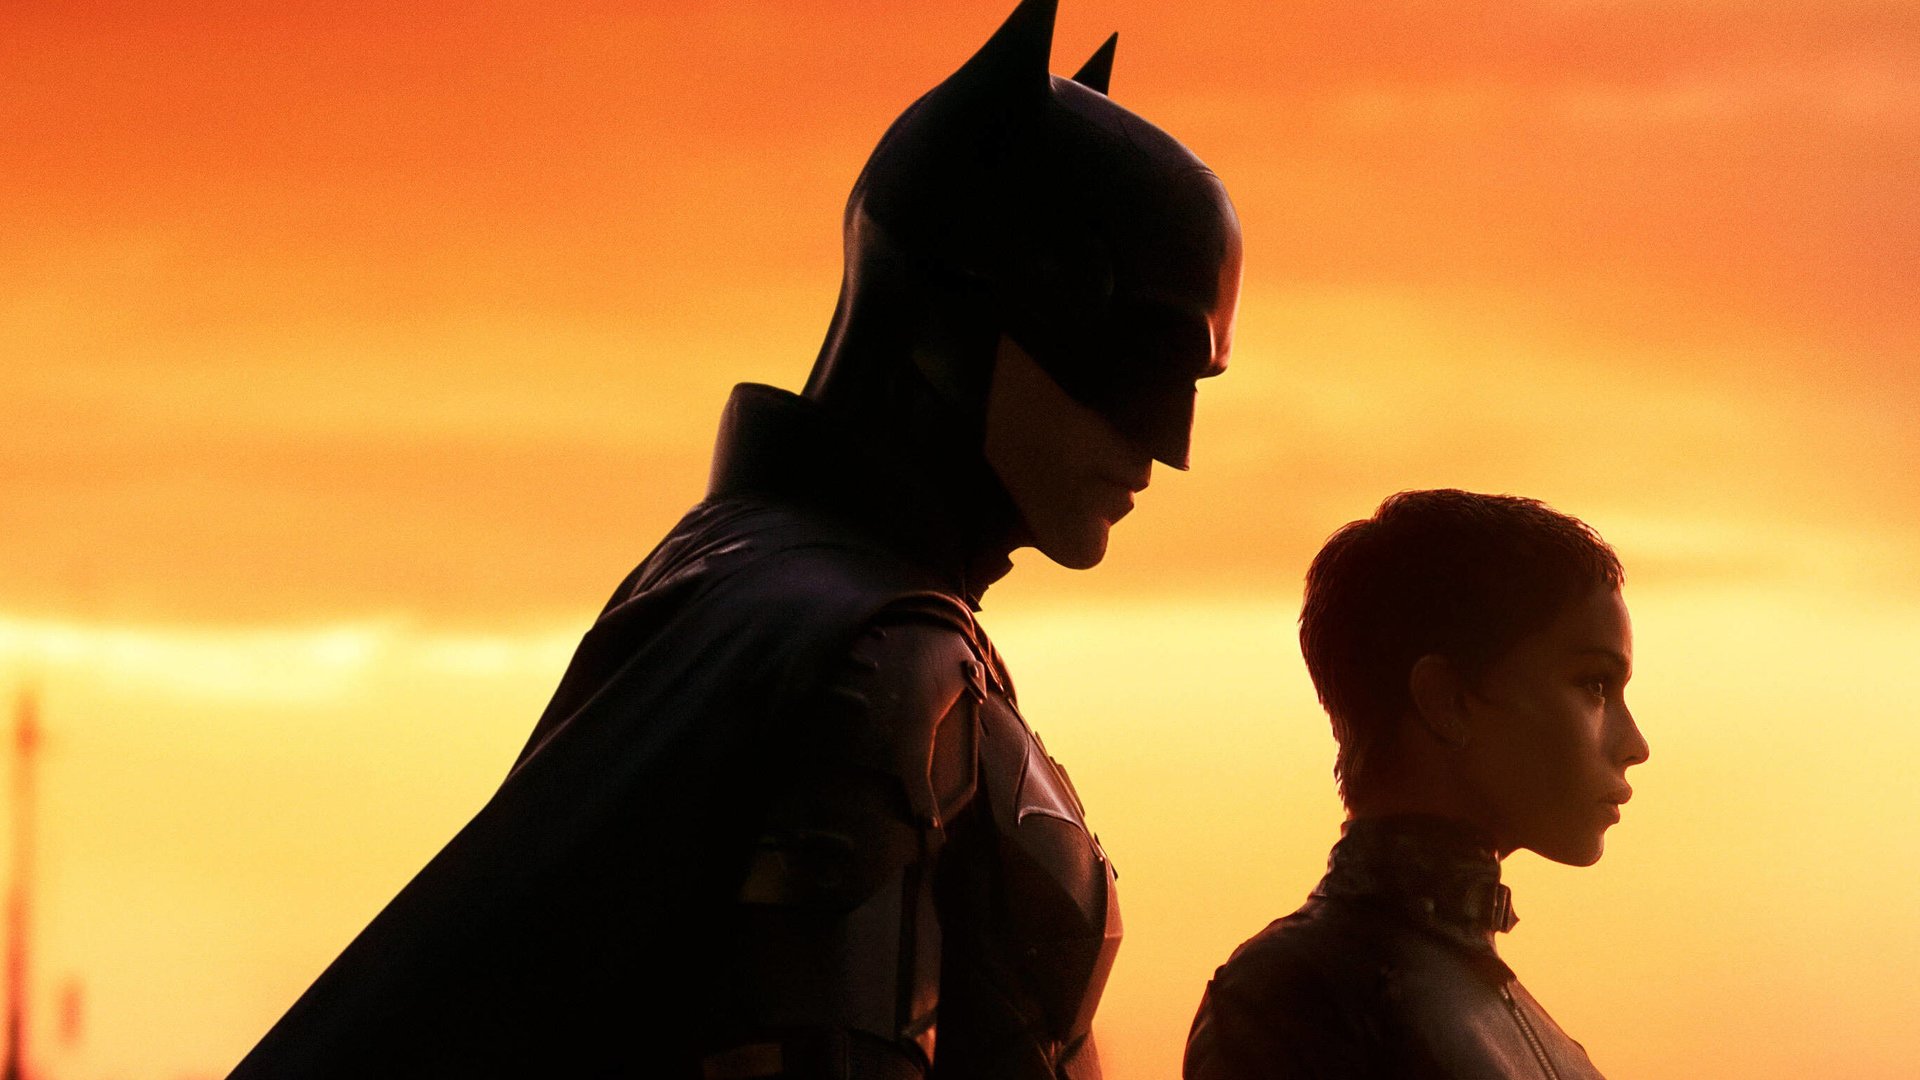 #„The Batman“-Regisseur will brisante gelöschte Szene noch veröffentlichen